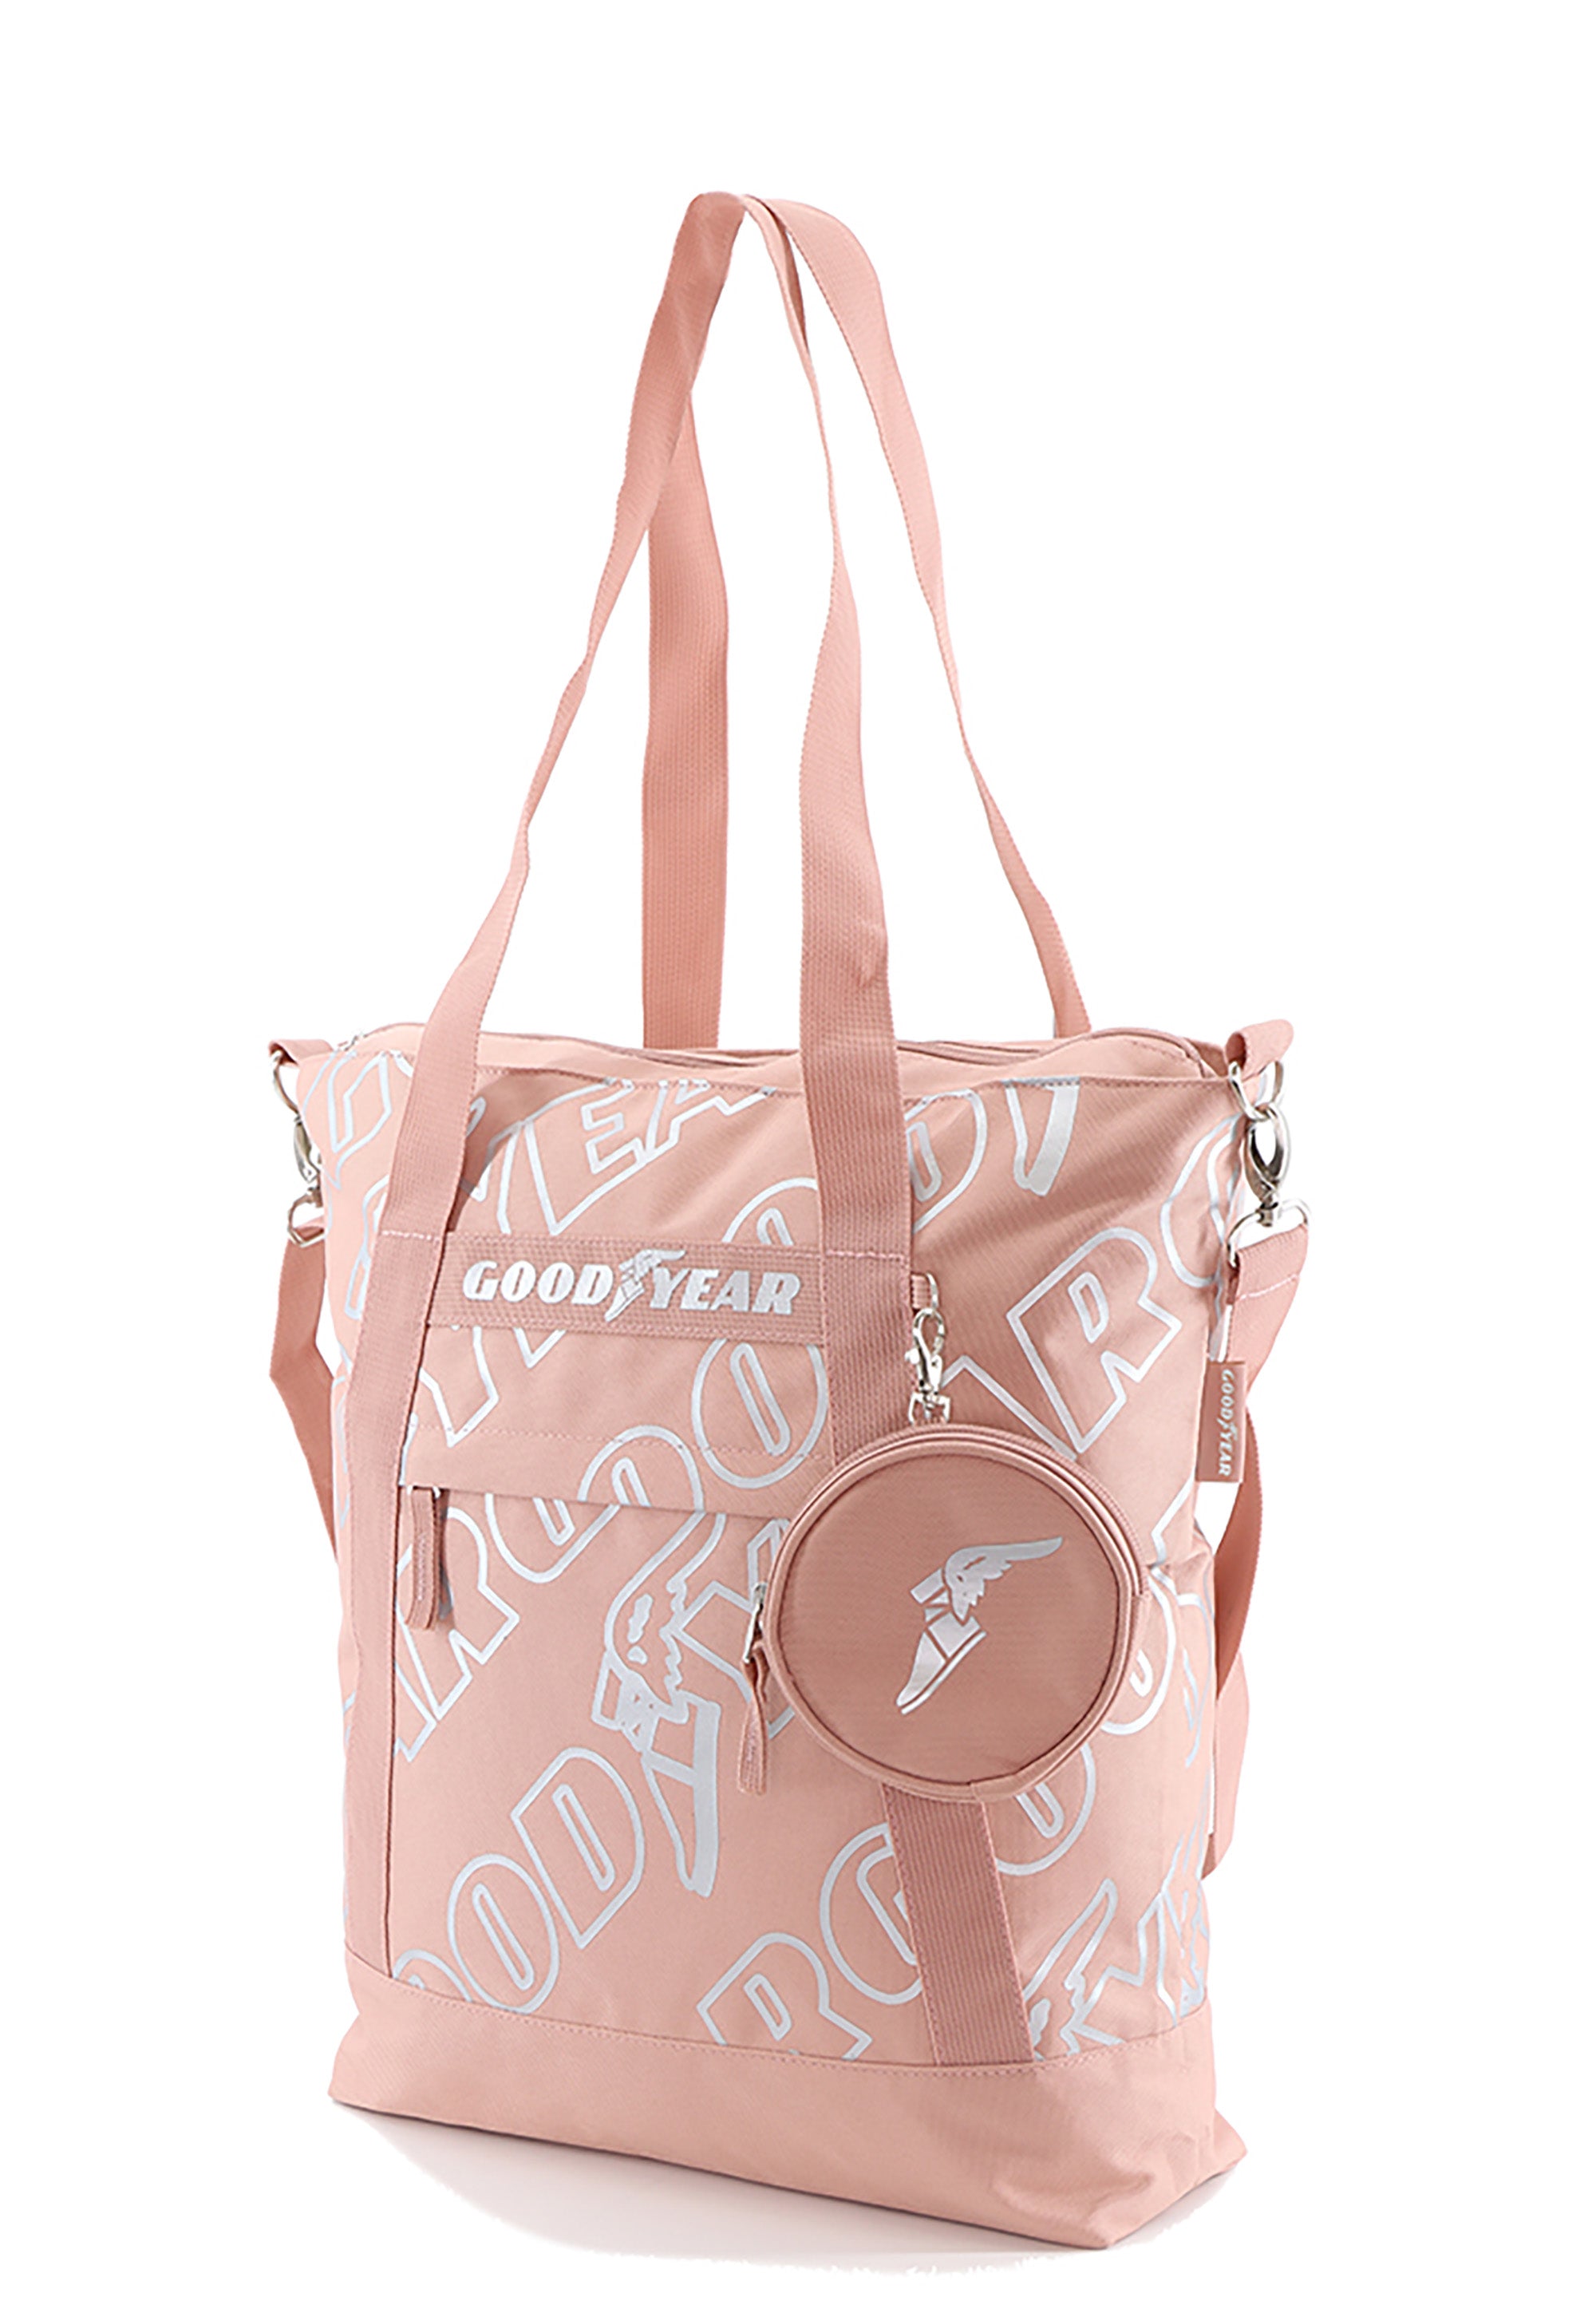 Goodyear RPET  Shopper Handtasche / Einkauftasche Rosa